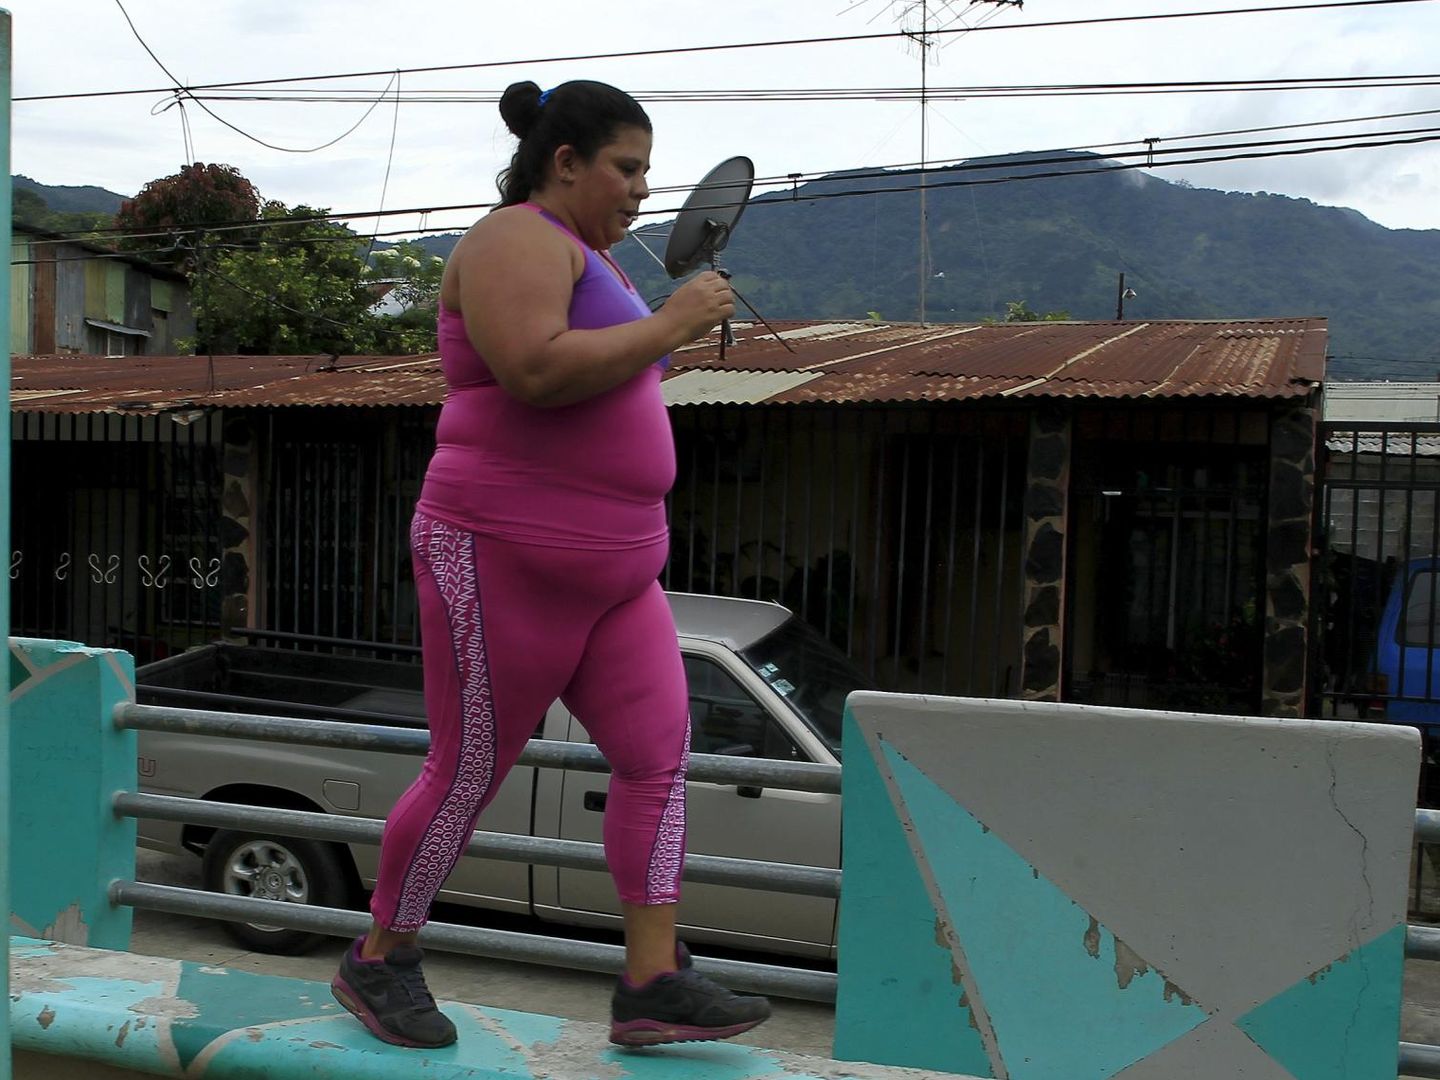 La obesidad ataca a personas de todo el mundo y toda condición (Reuters/Juan Carlos Ulate)